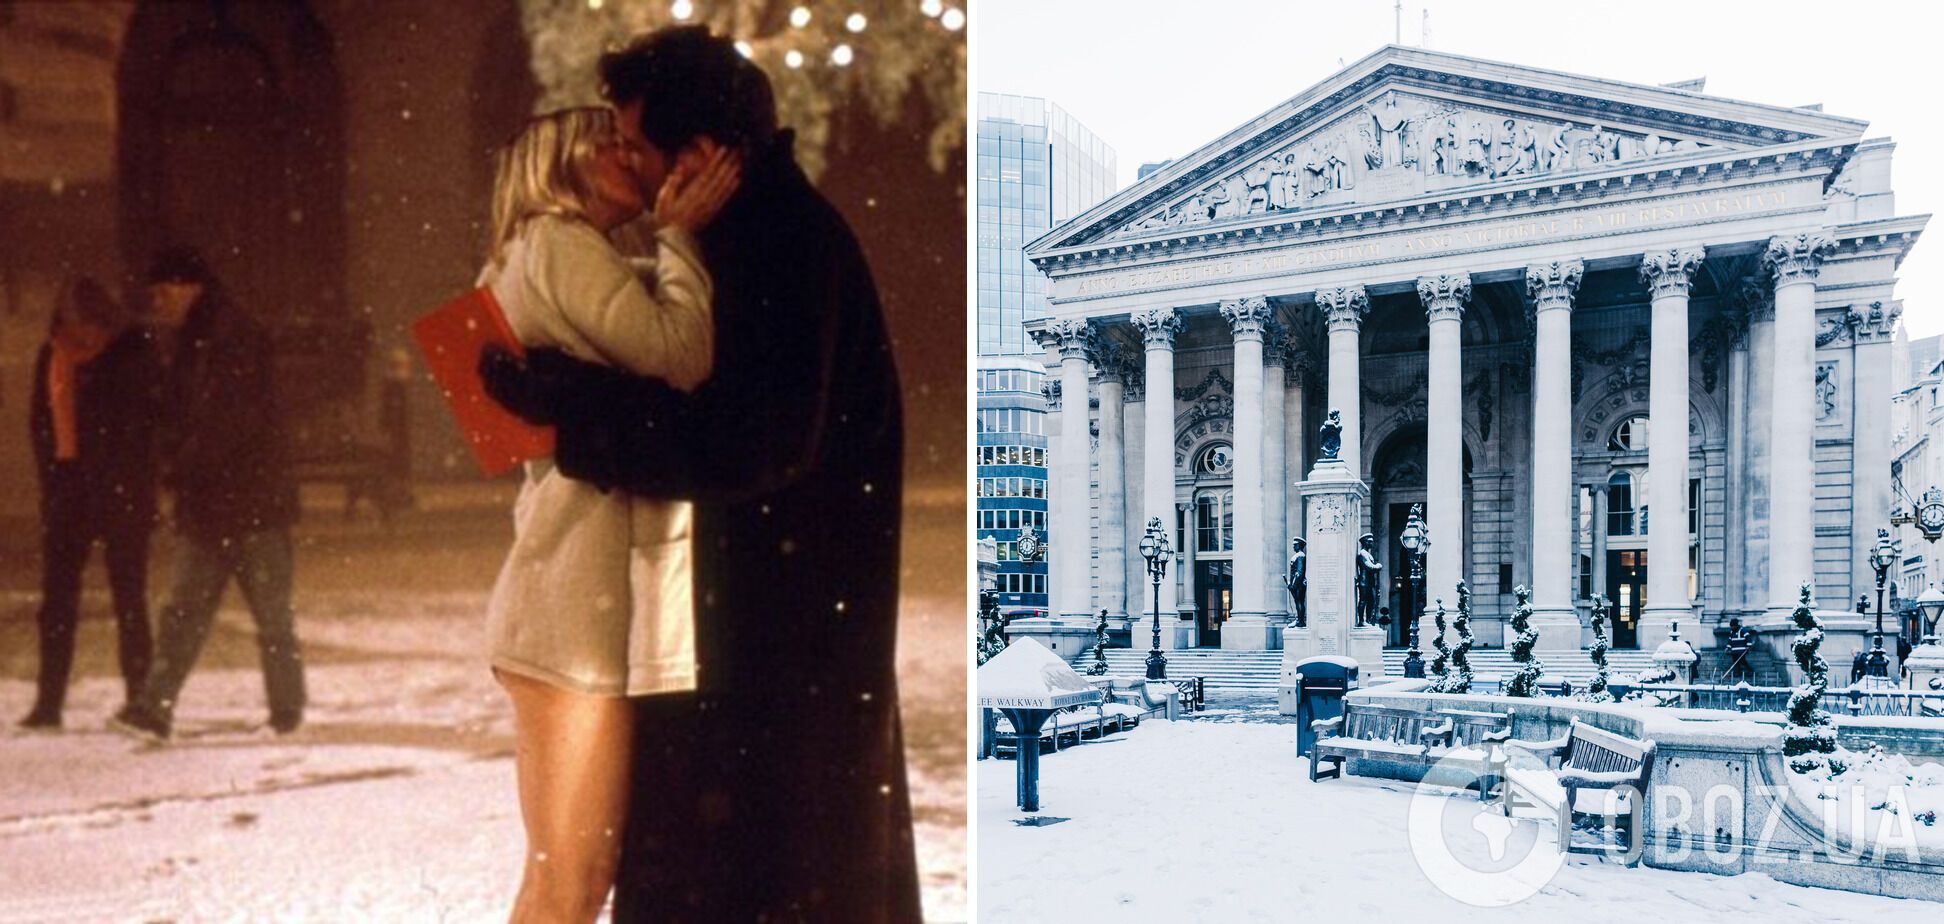 Культовый поцелуй снимали у Королевской биржи.